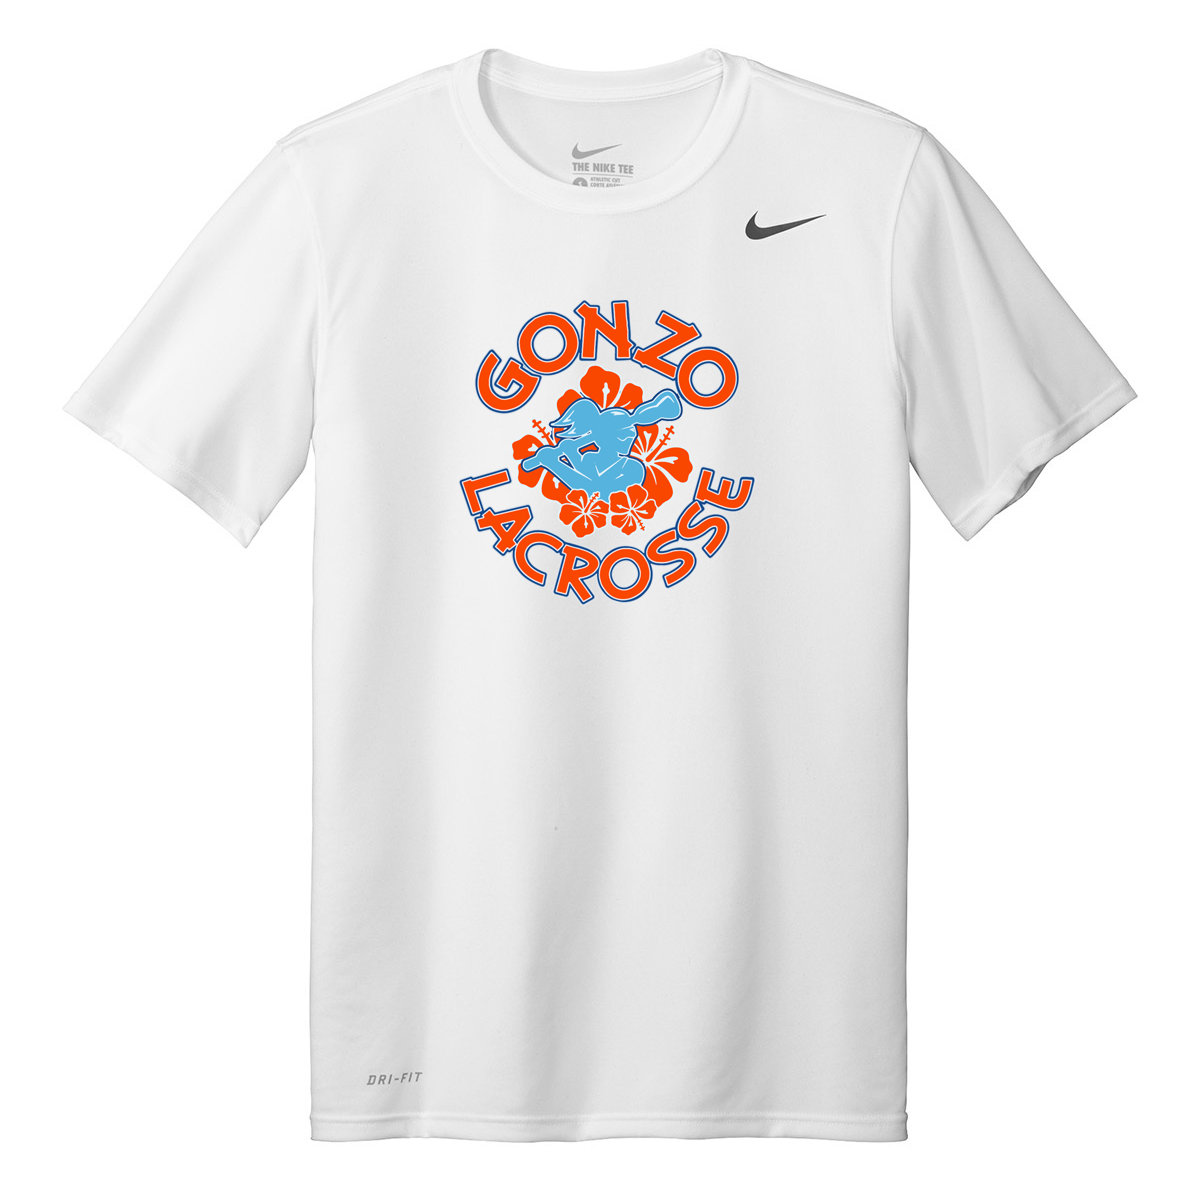 Gonzo Girls Lacrosse Nike Legend Tee